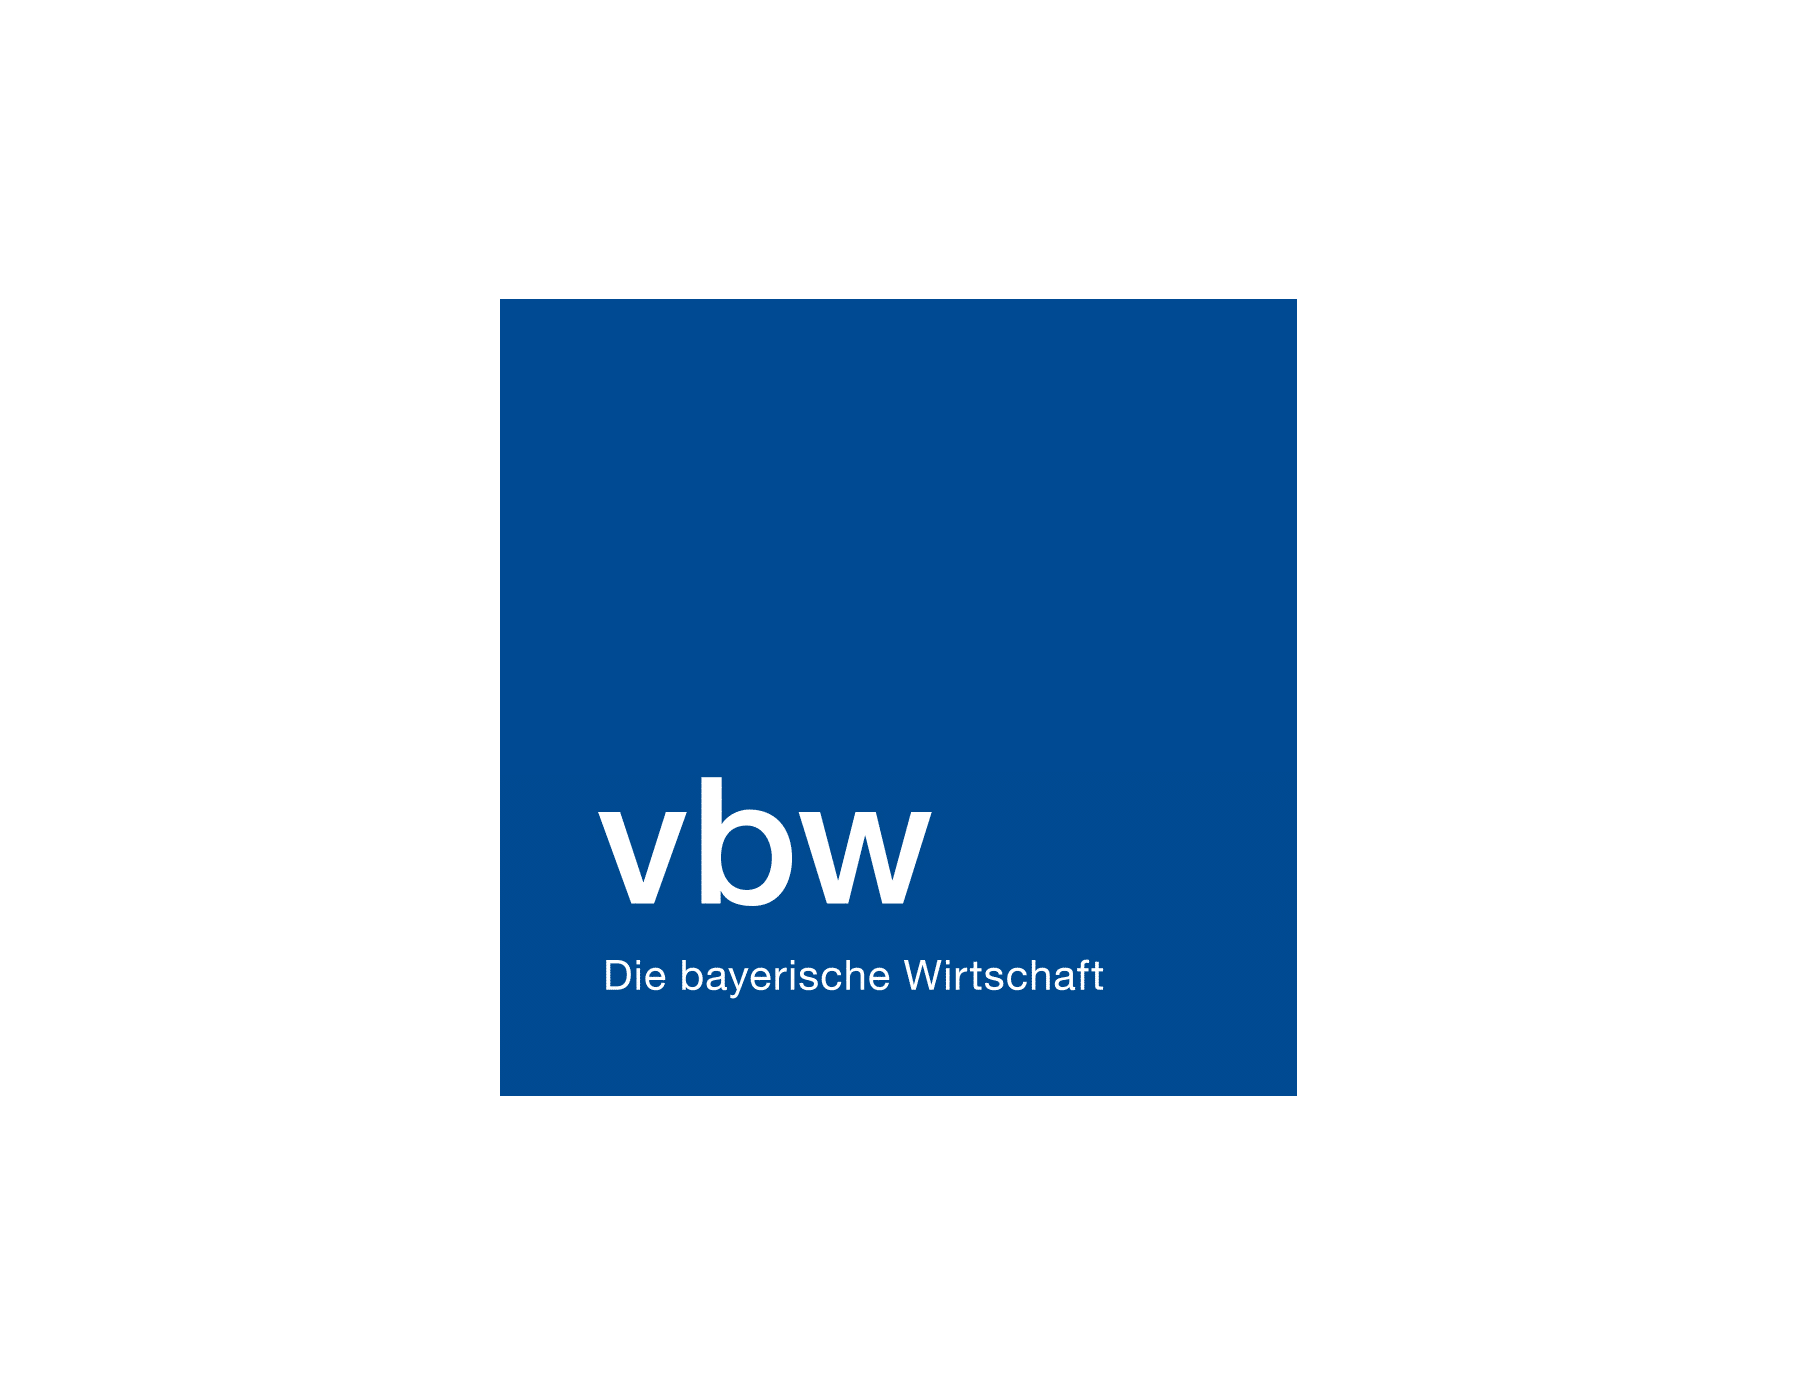 Vbw_DbW_RGB (1)